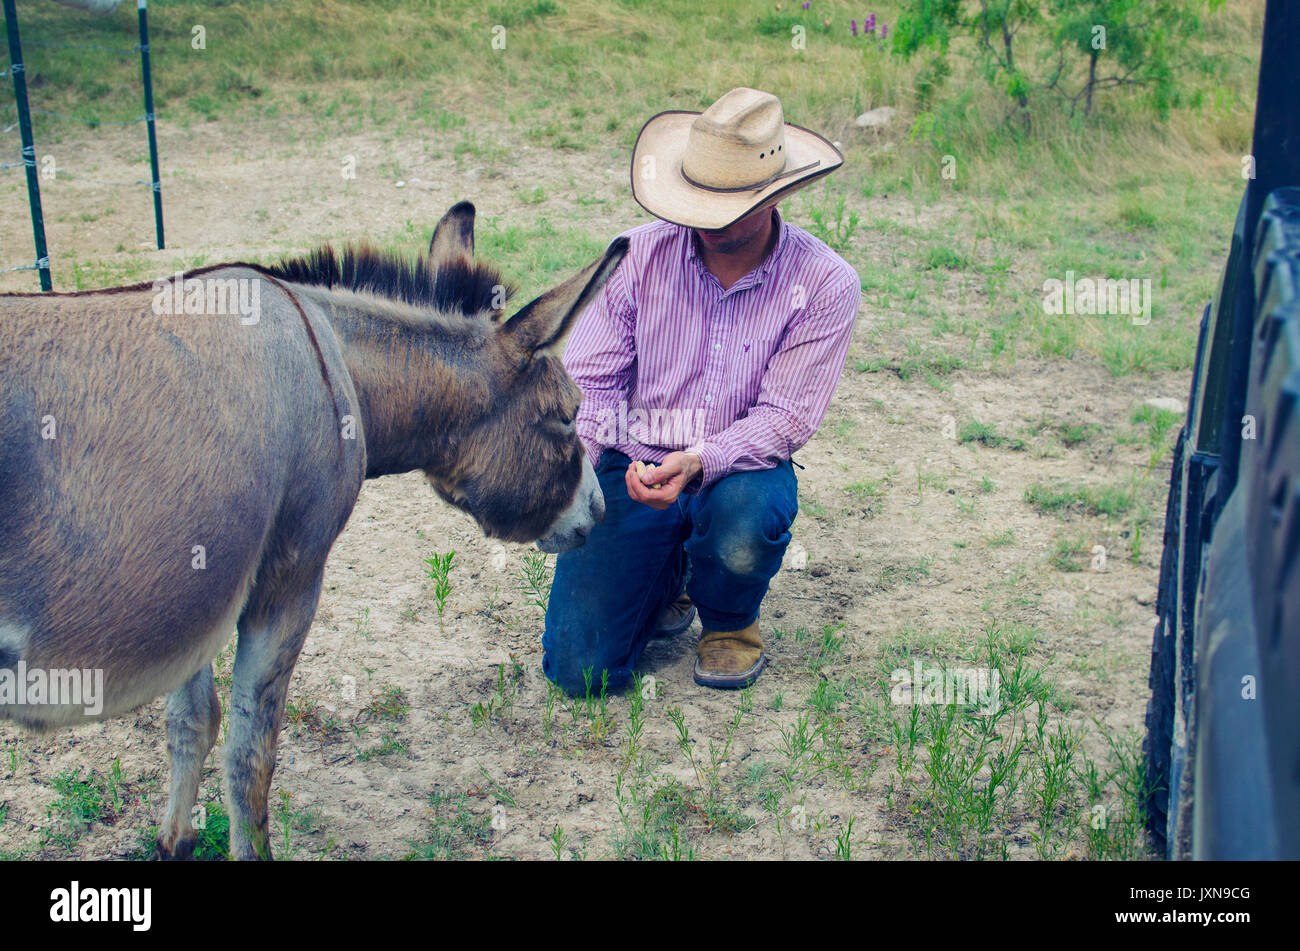 Hombre en ropa de trabajo y sombrero de cowboy alimentando cute mini burro animal de granja. Foto de stock